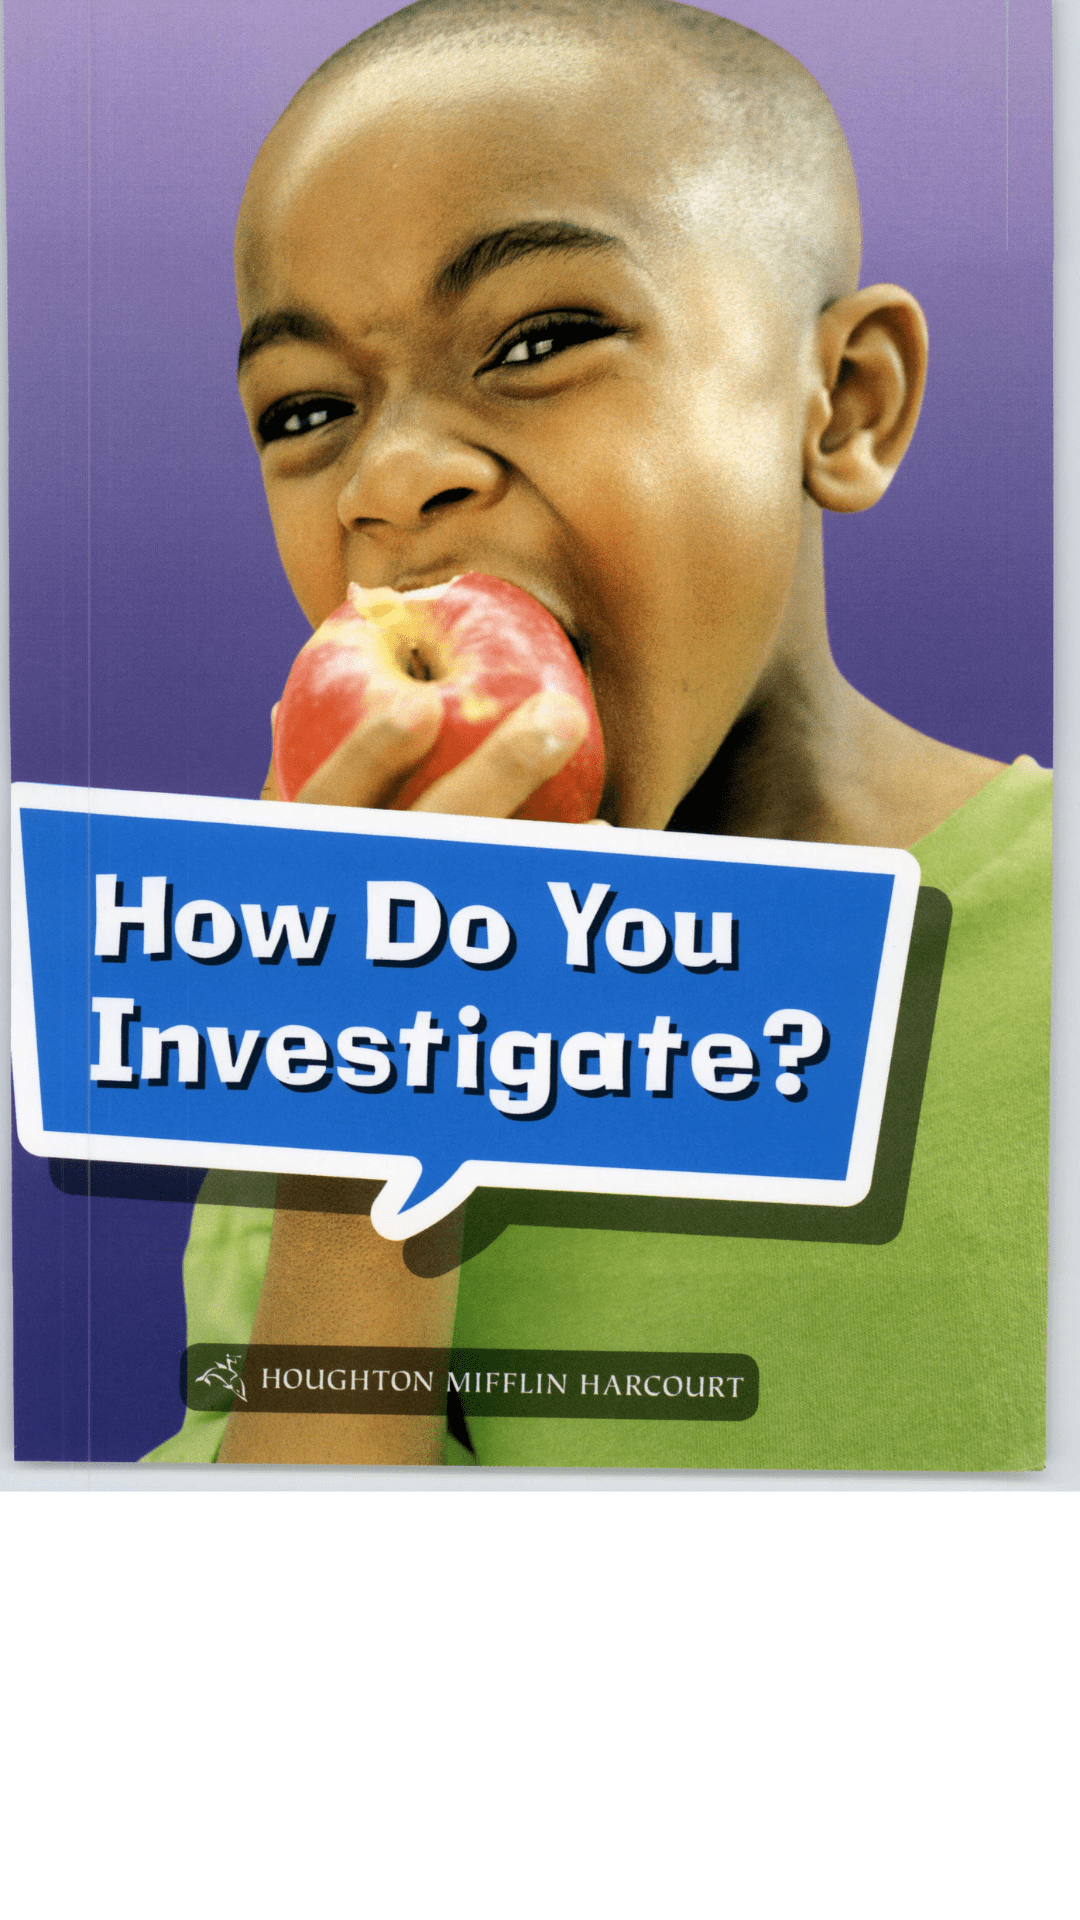 How do you Investigate?